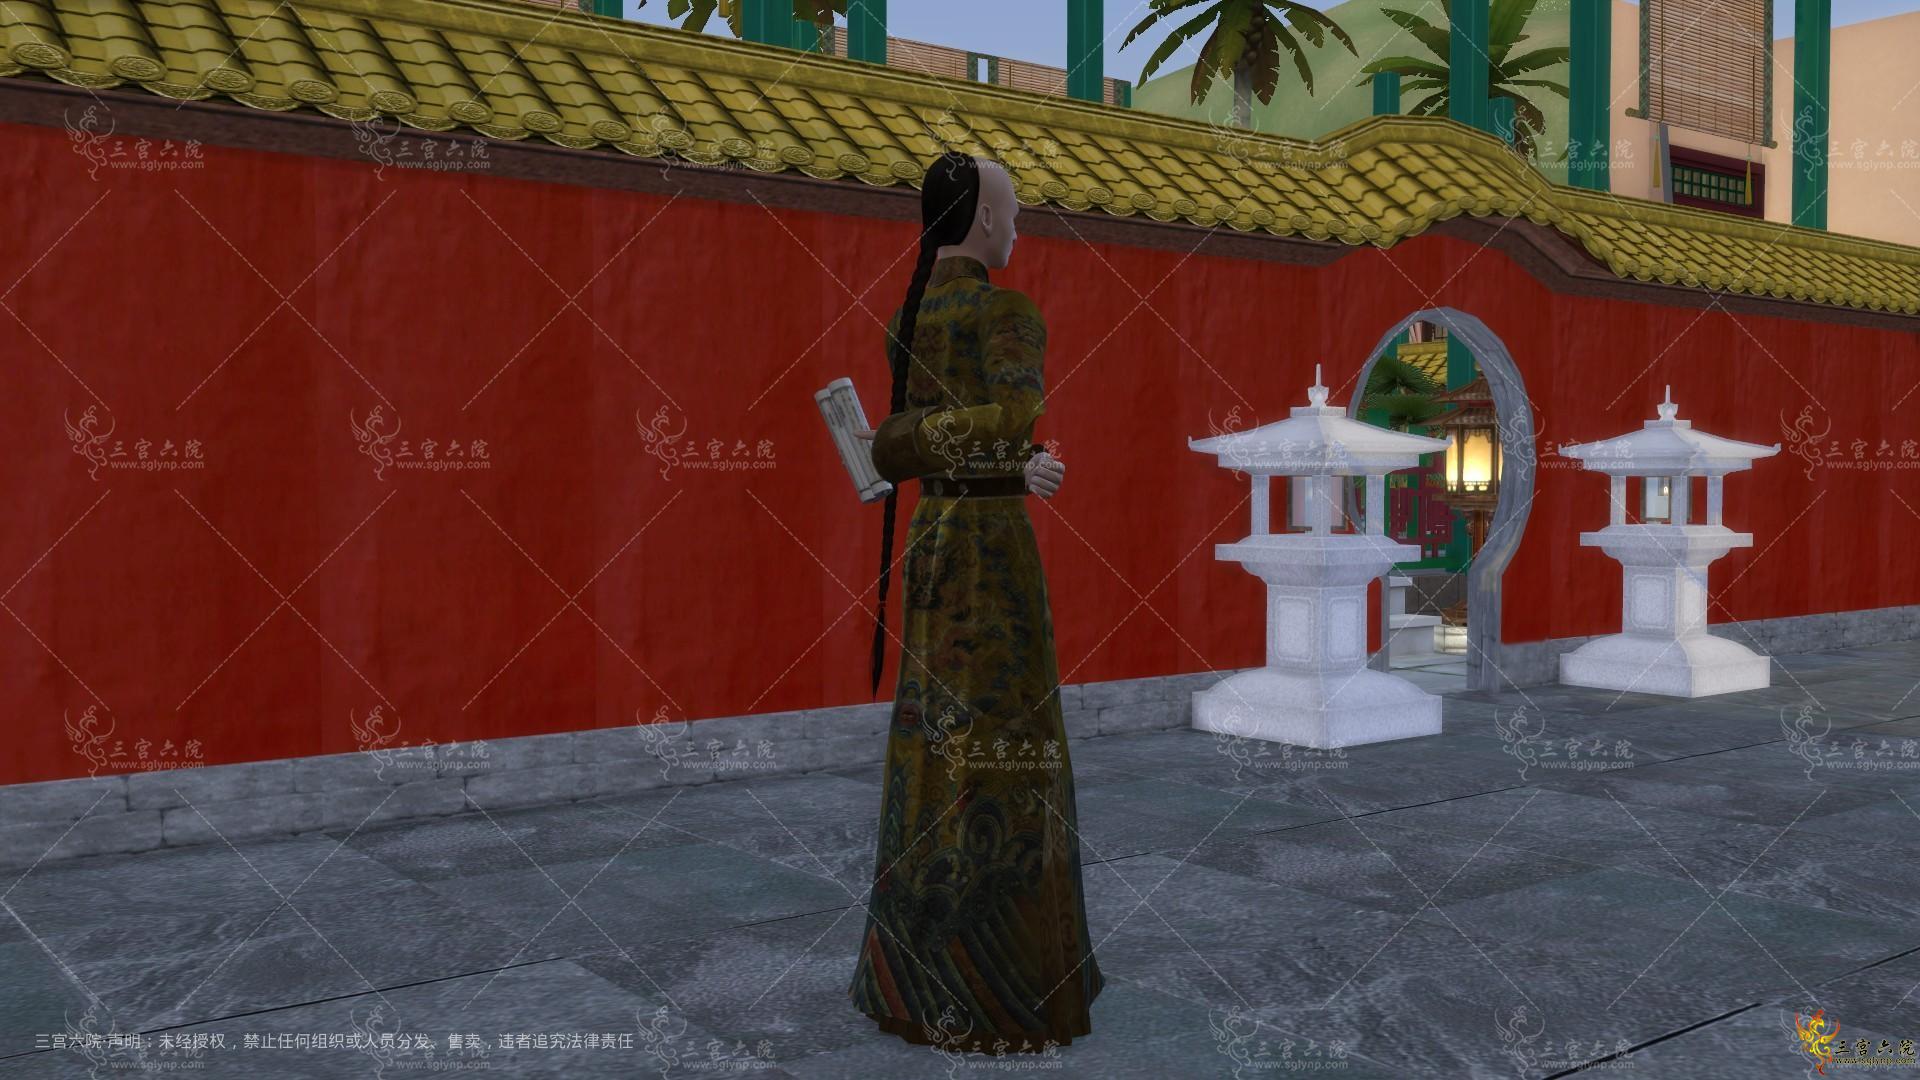 Sims 4 Screenshot 2022.11.27 - 17.29.06.04.png